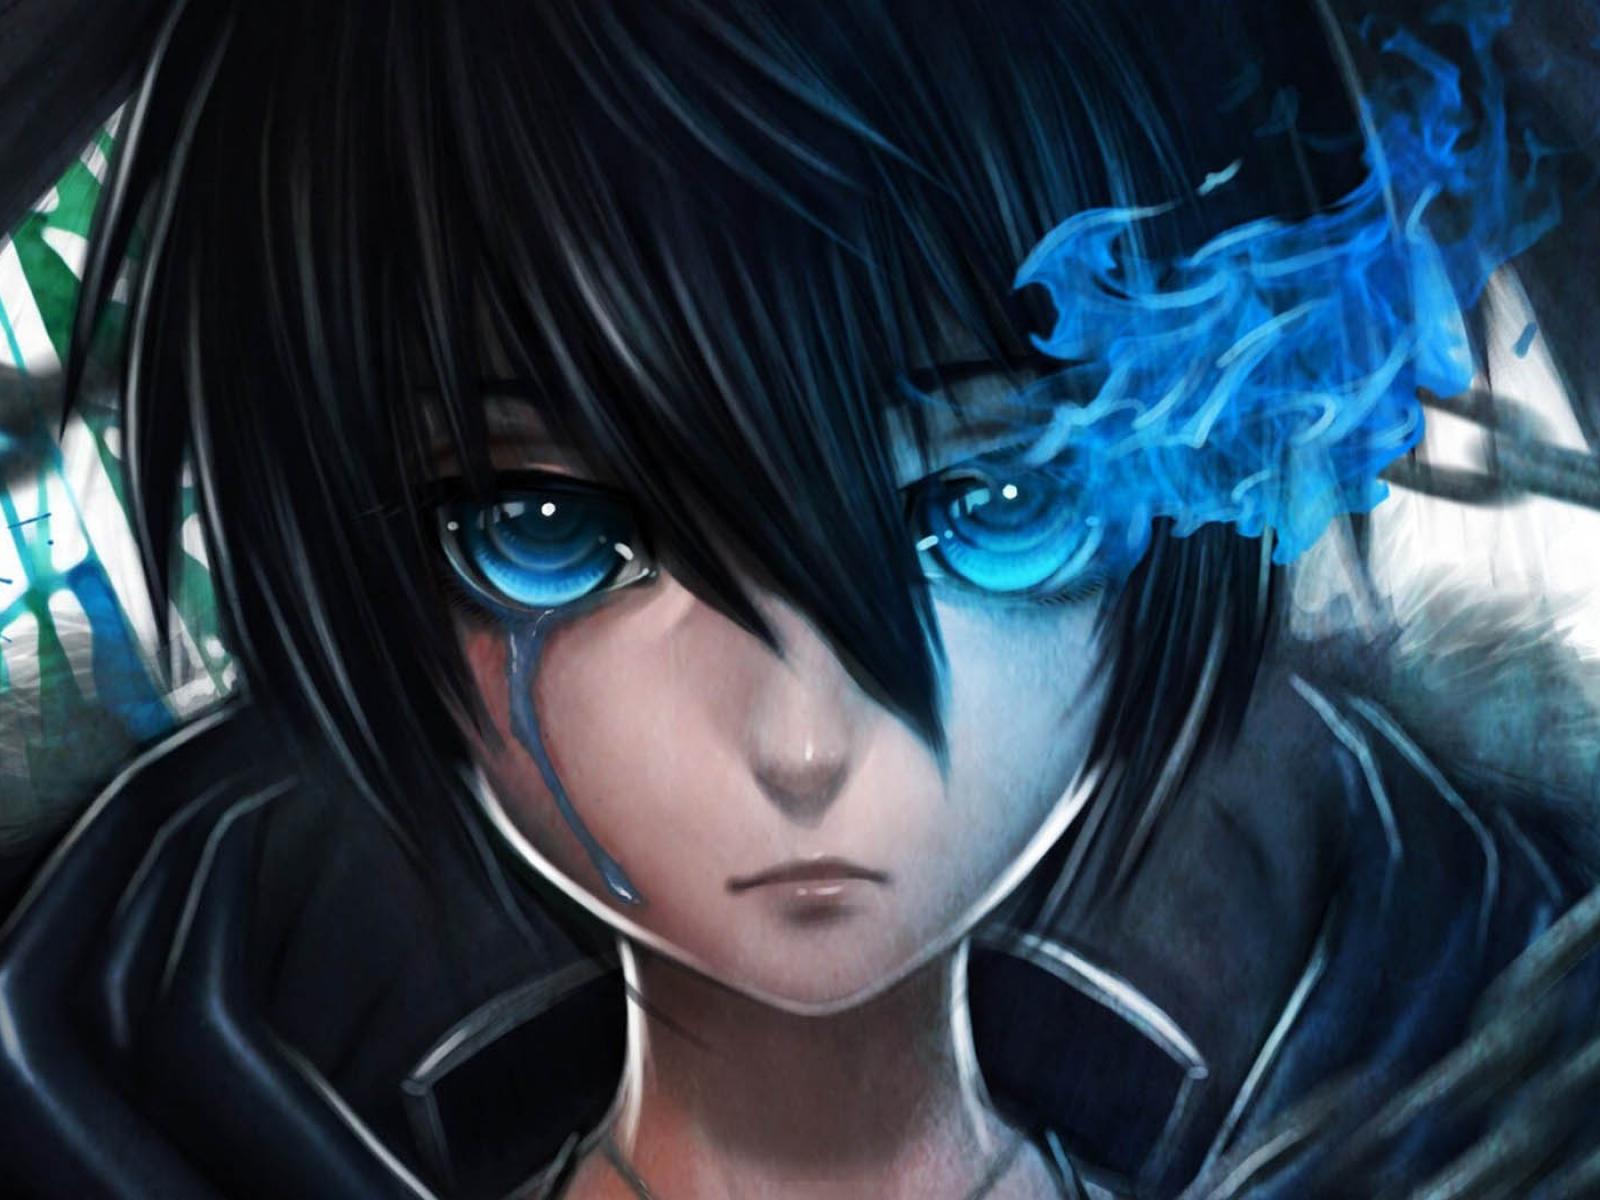 Blue Eye Anime Wallpapers - Top Nhá»¯ng HÃ¬nh áº¢nh Ä�áº¹p